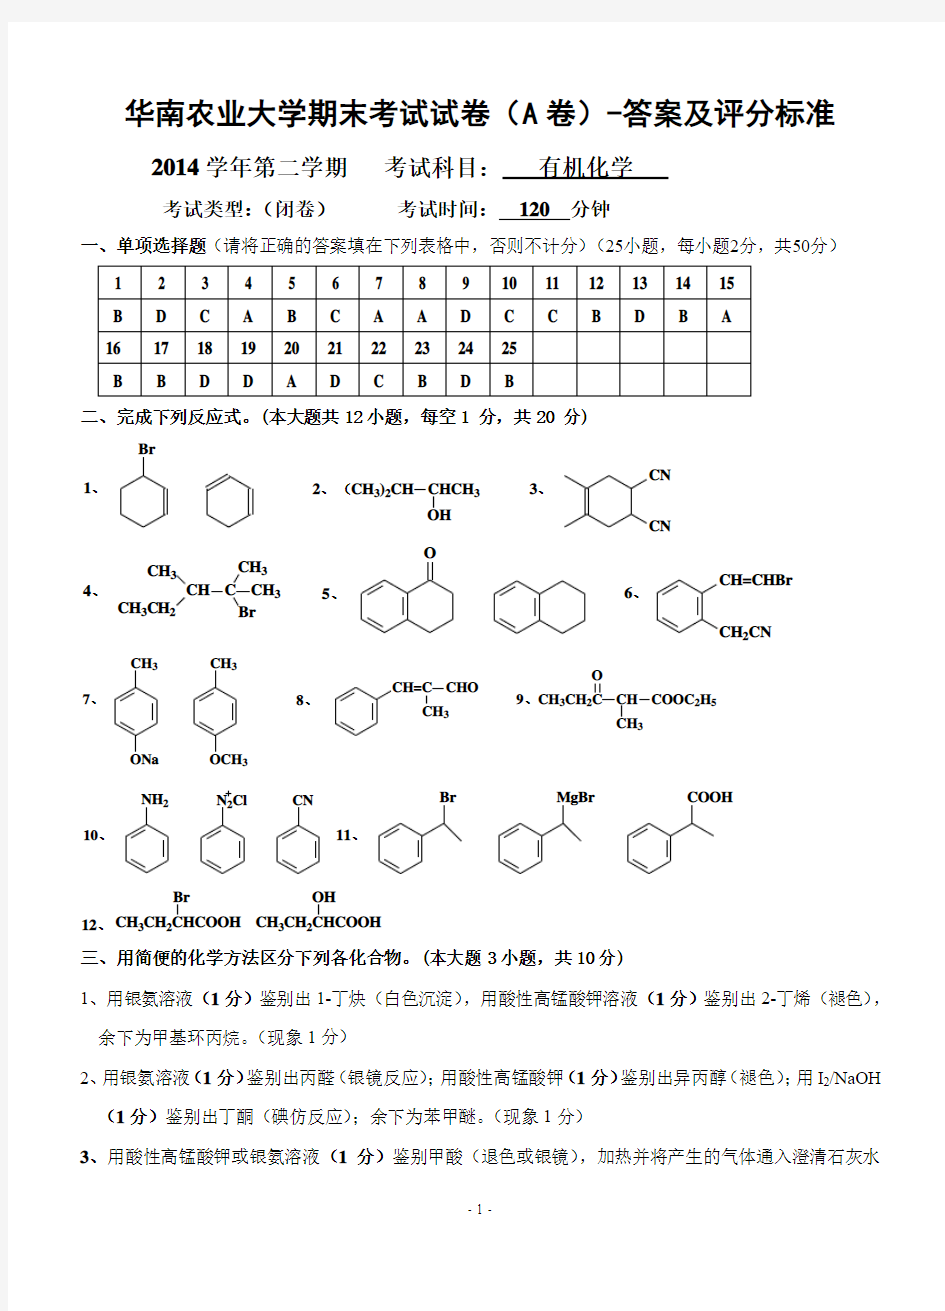 2015有机化学考试(A)-答案 (1)